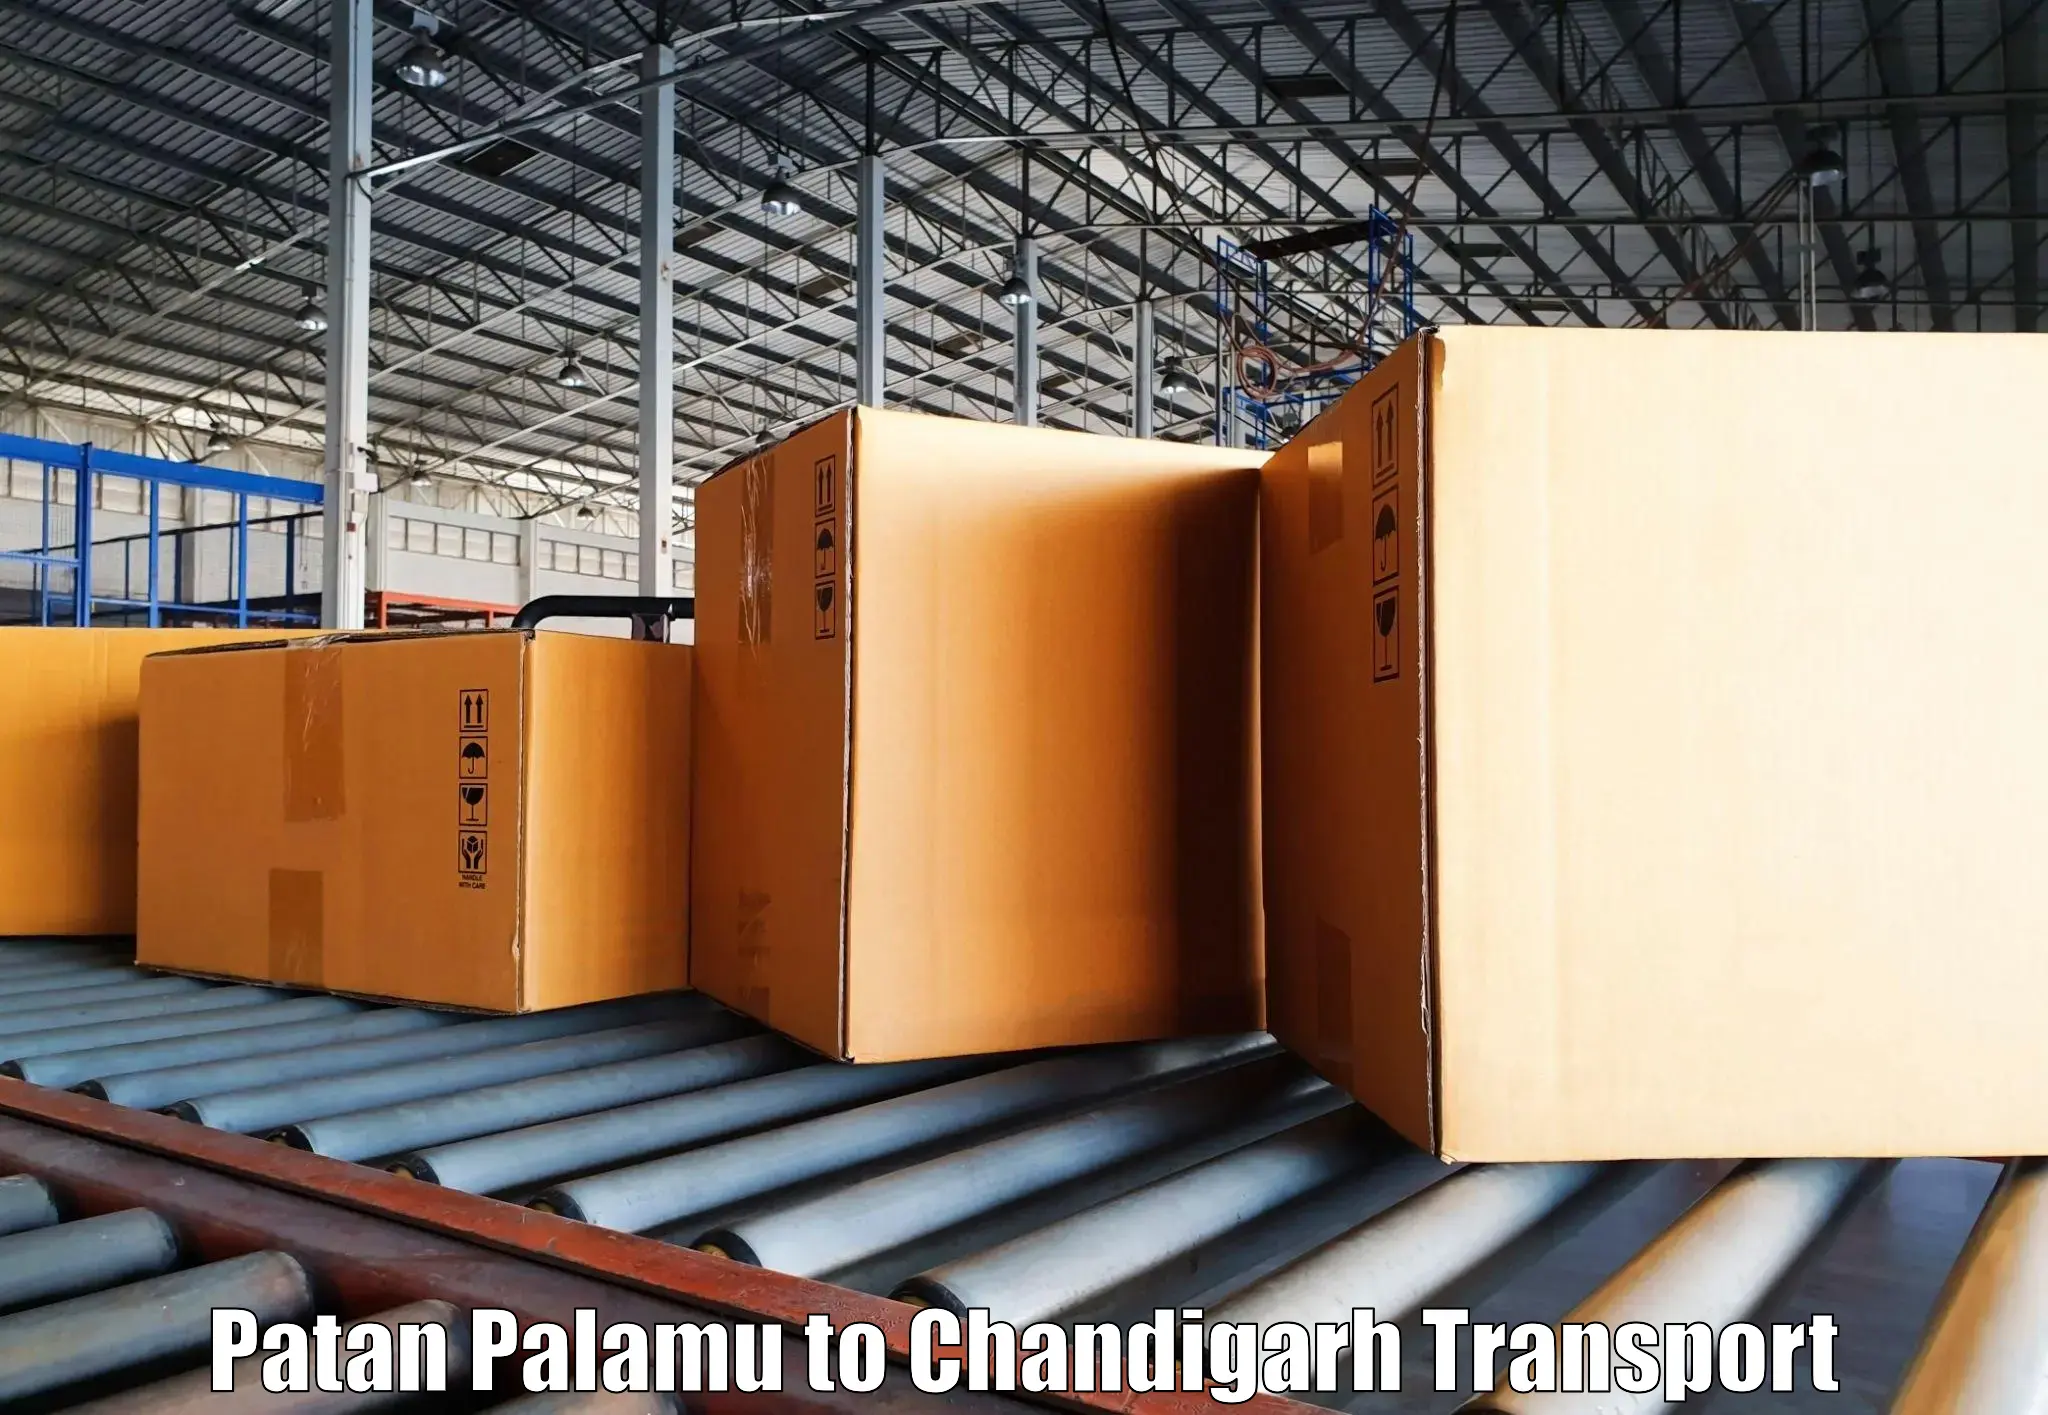 Bike shipping service Patan Palamu to Chandigarh